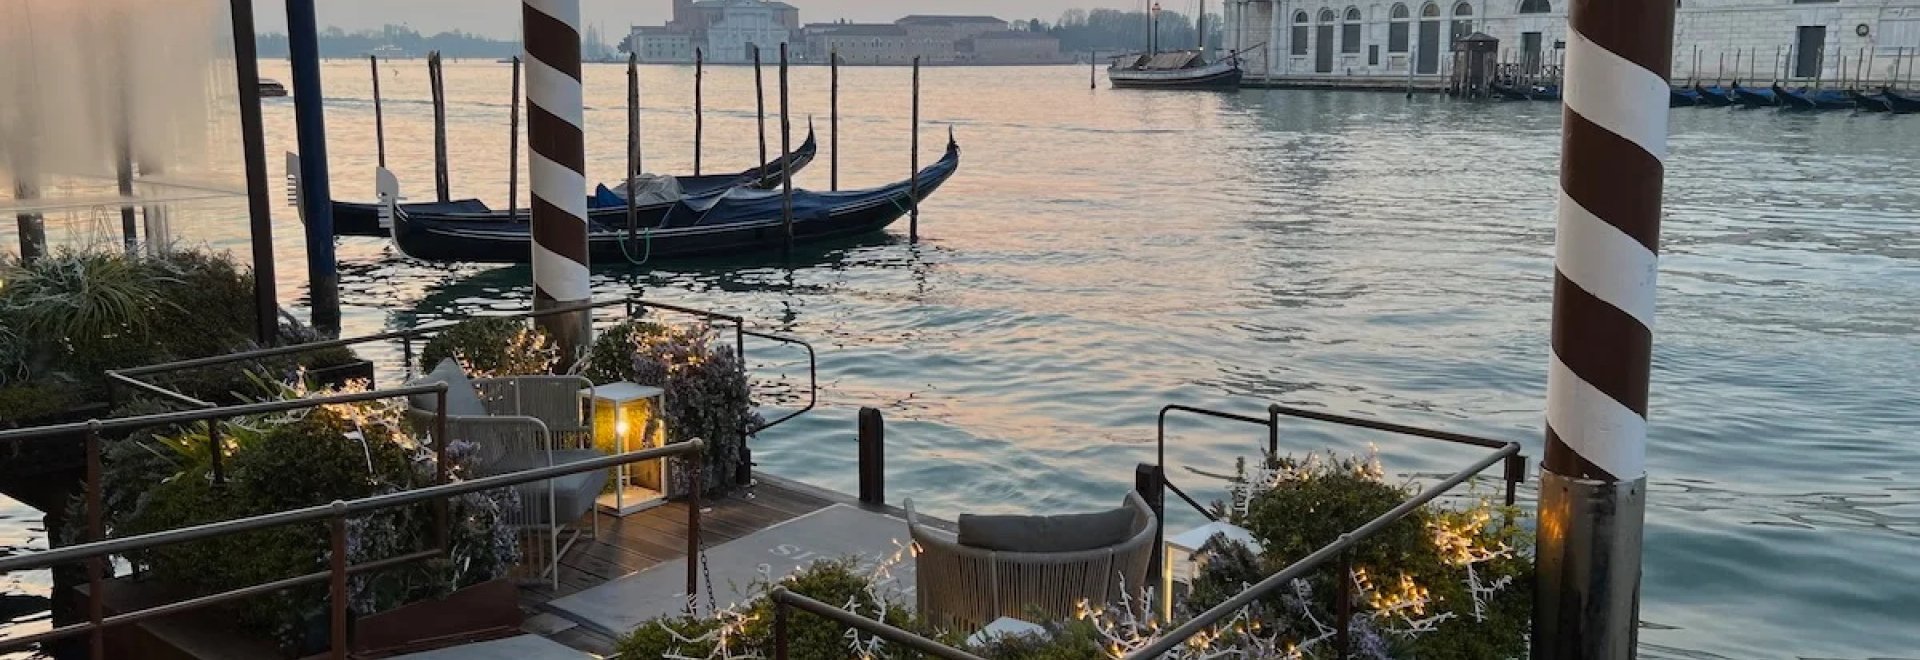 Le luxe et le design français résonnent dans les salons de Venise.